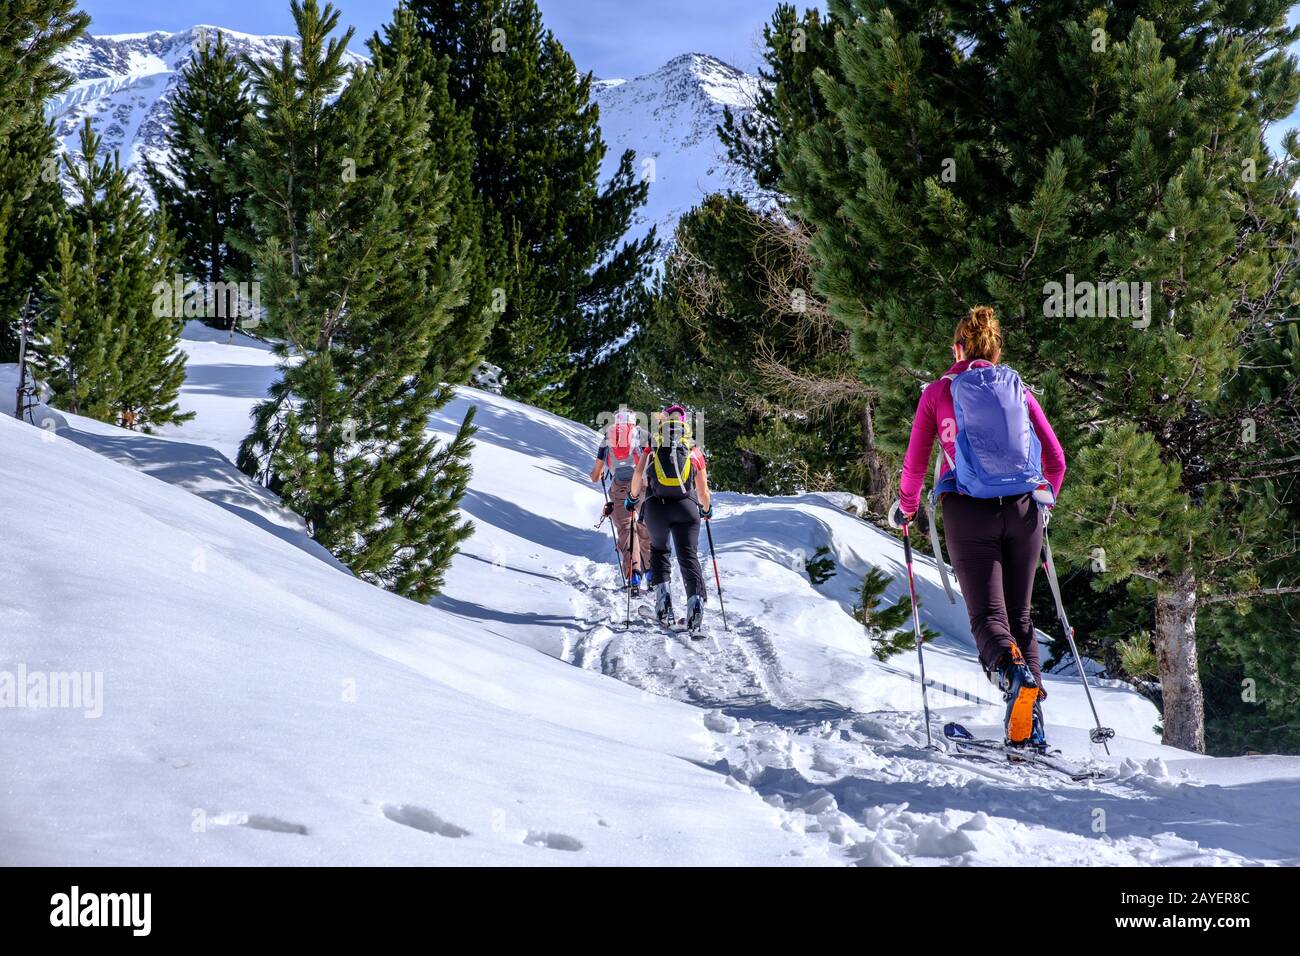 Backcountry ski in Valfurva, Cevedale, Italy Stock Photo